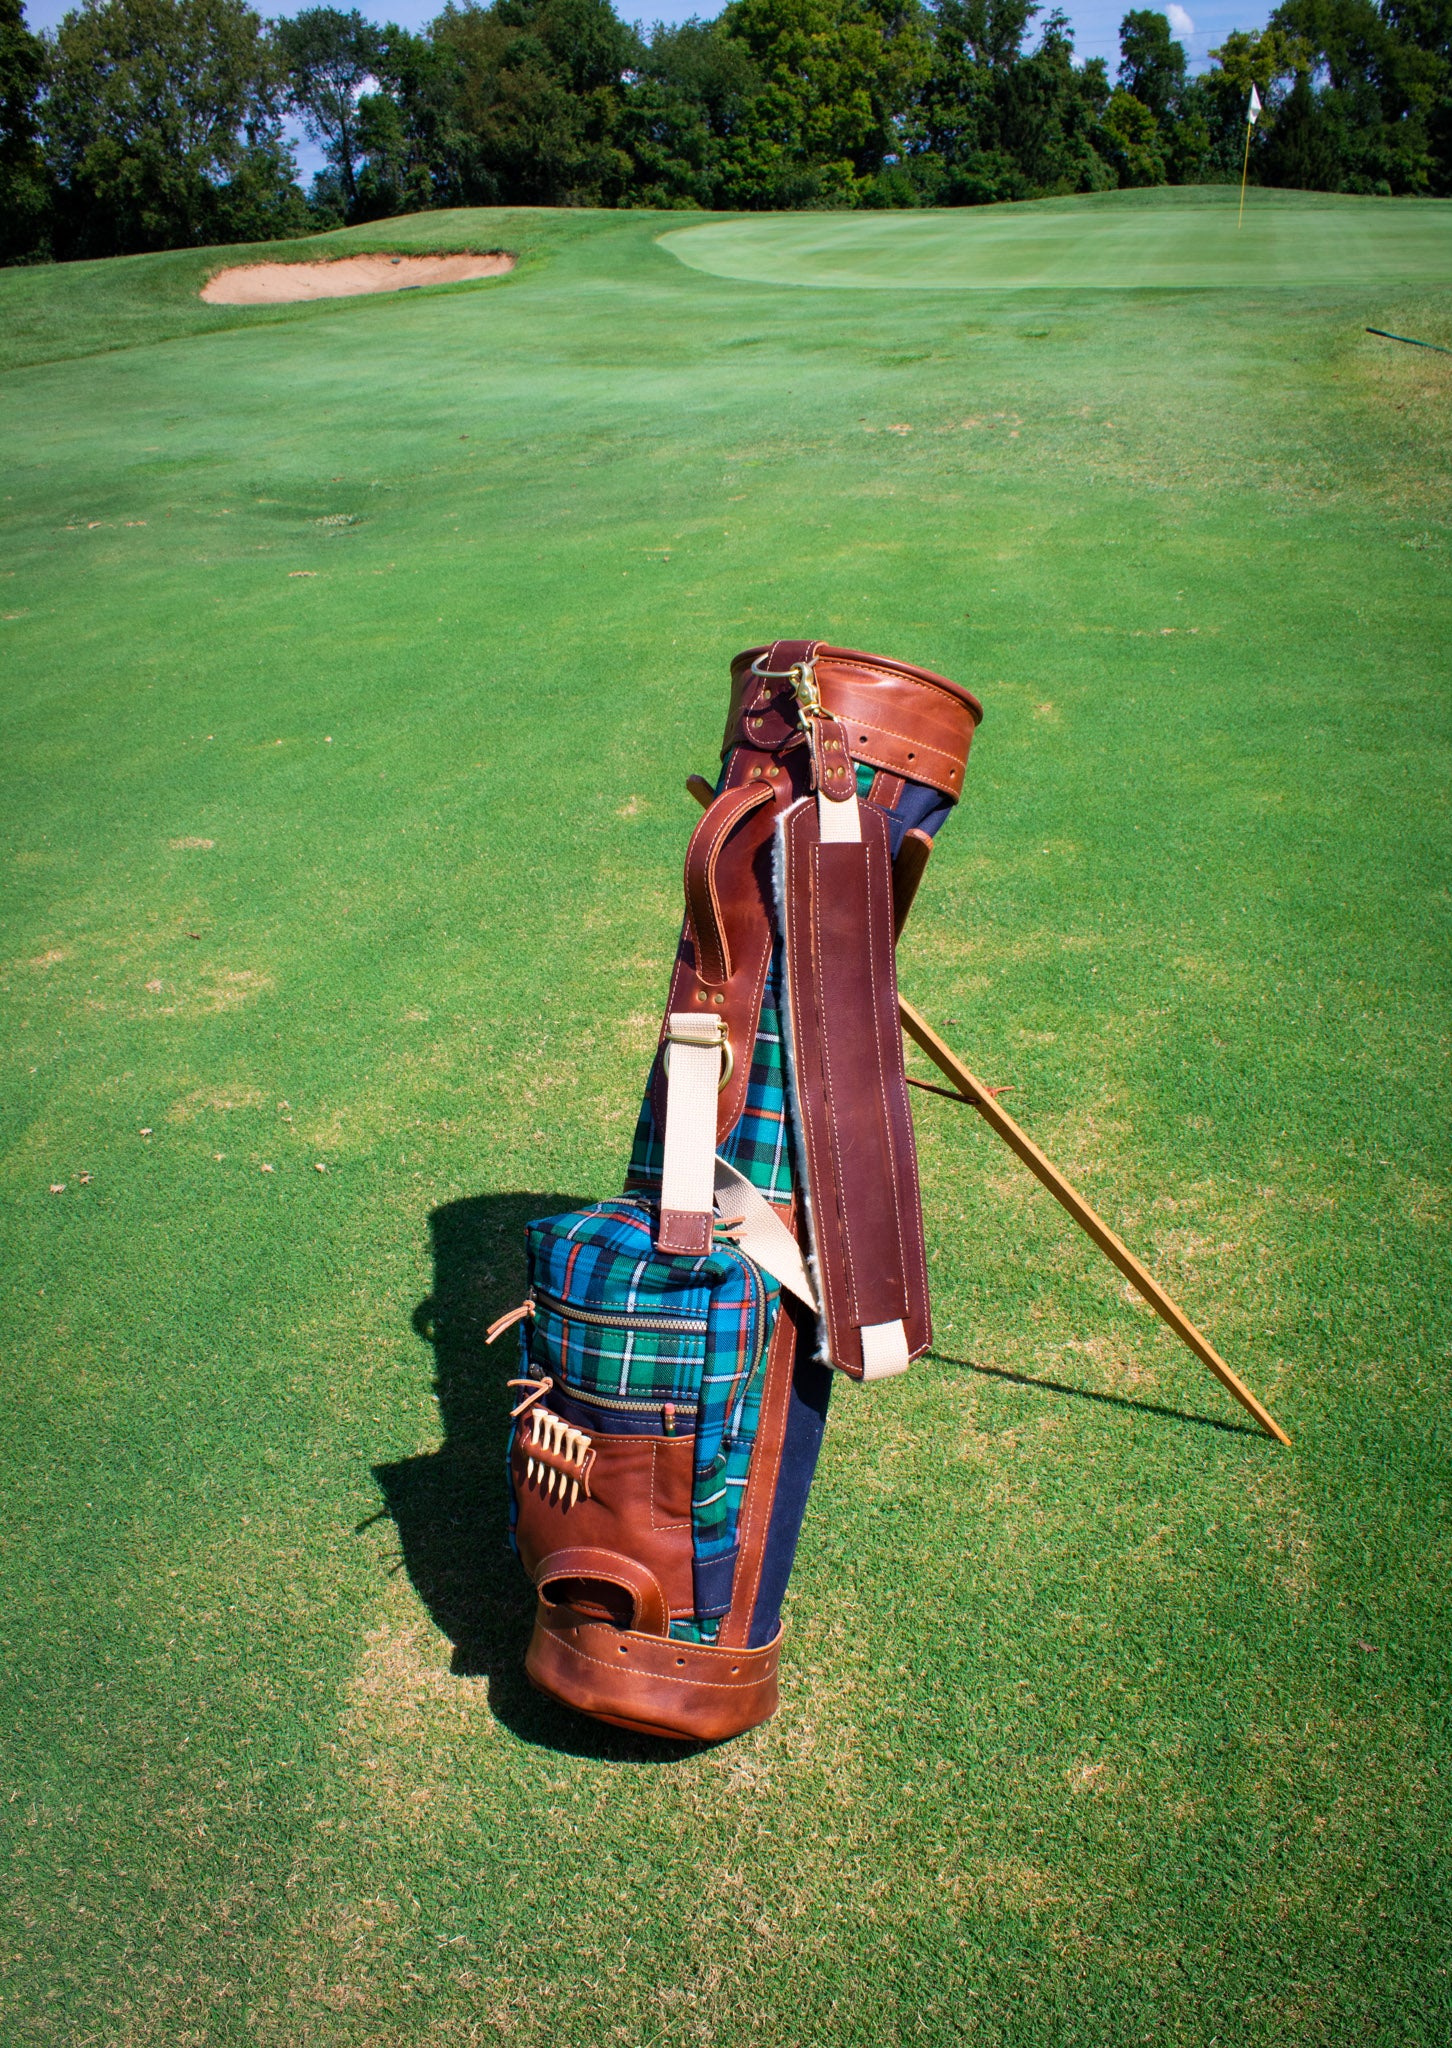 Official Mackenzie OC Tartan Golf Bag on Golf Course- Steurer & Jacoby